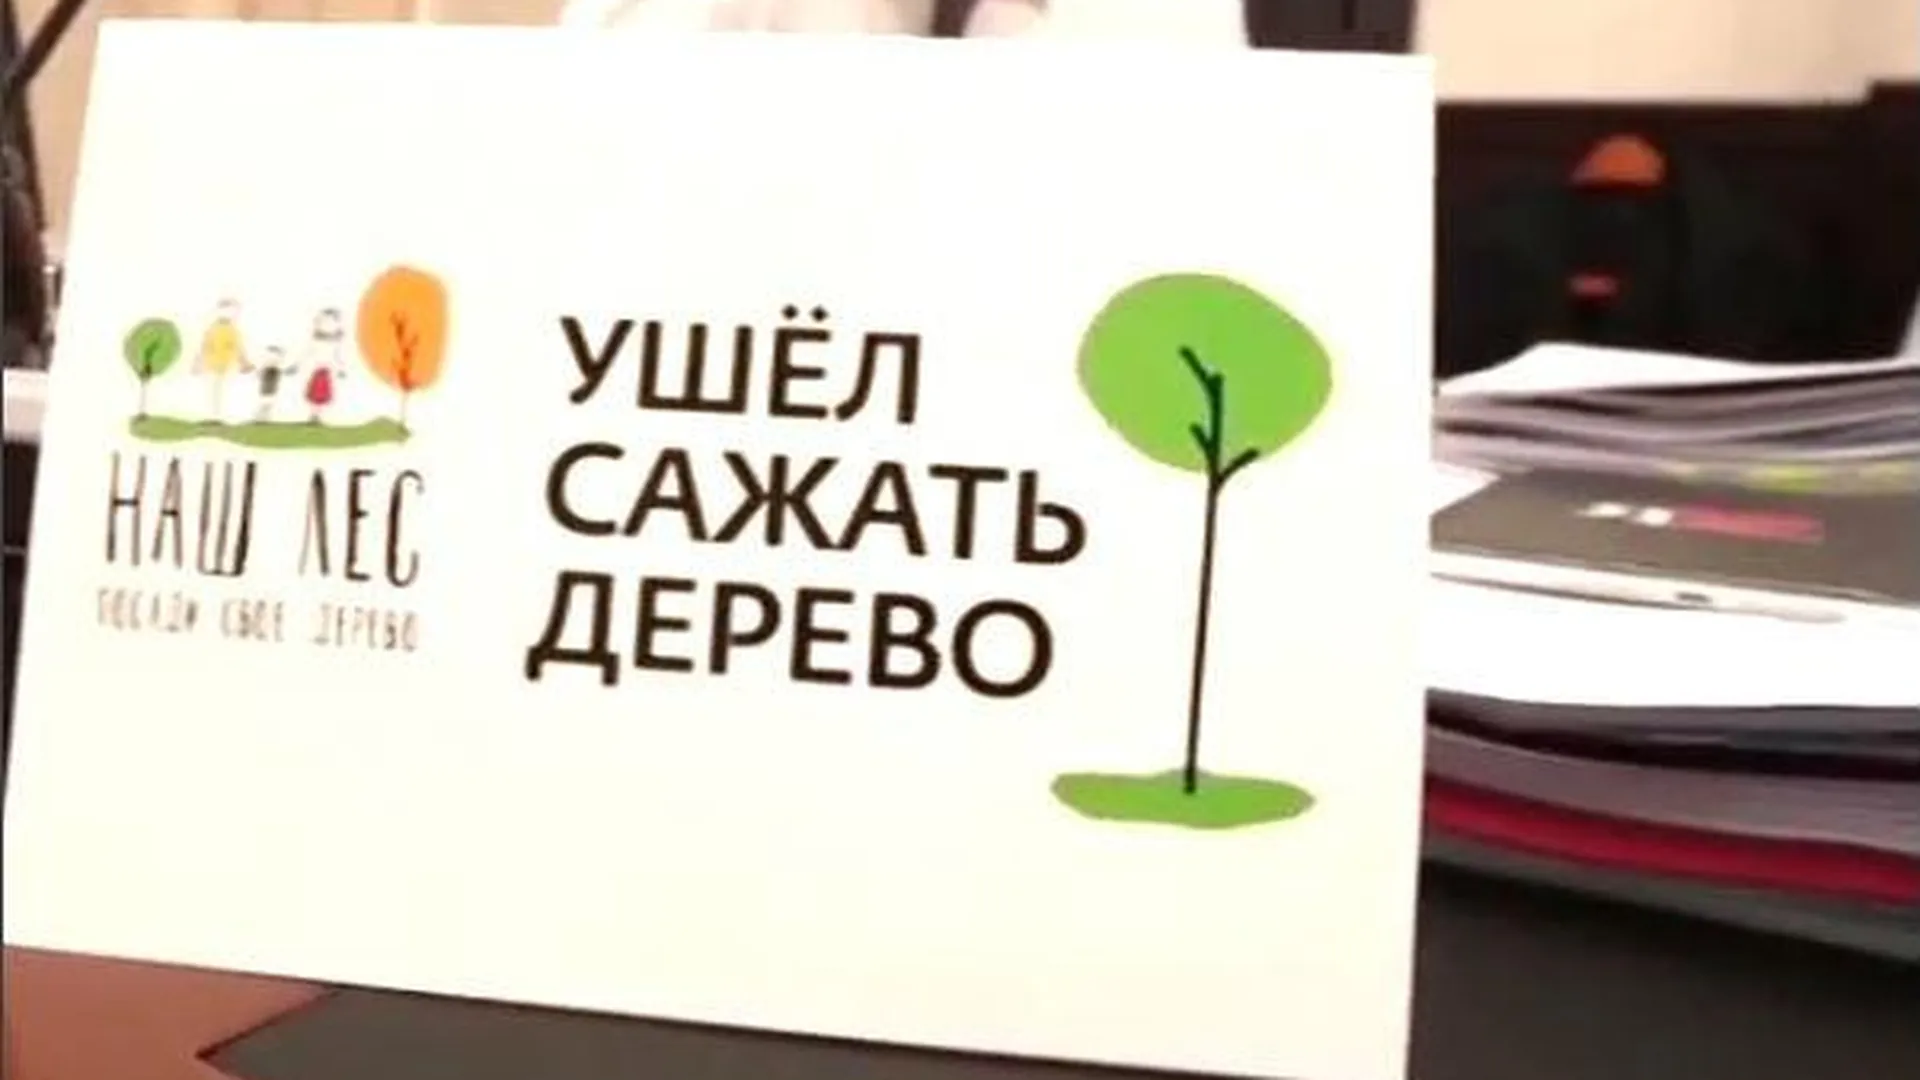 Таблички «Ушел сажать дерево» появились в кабинетах министров МО